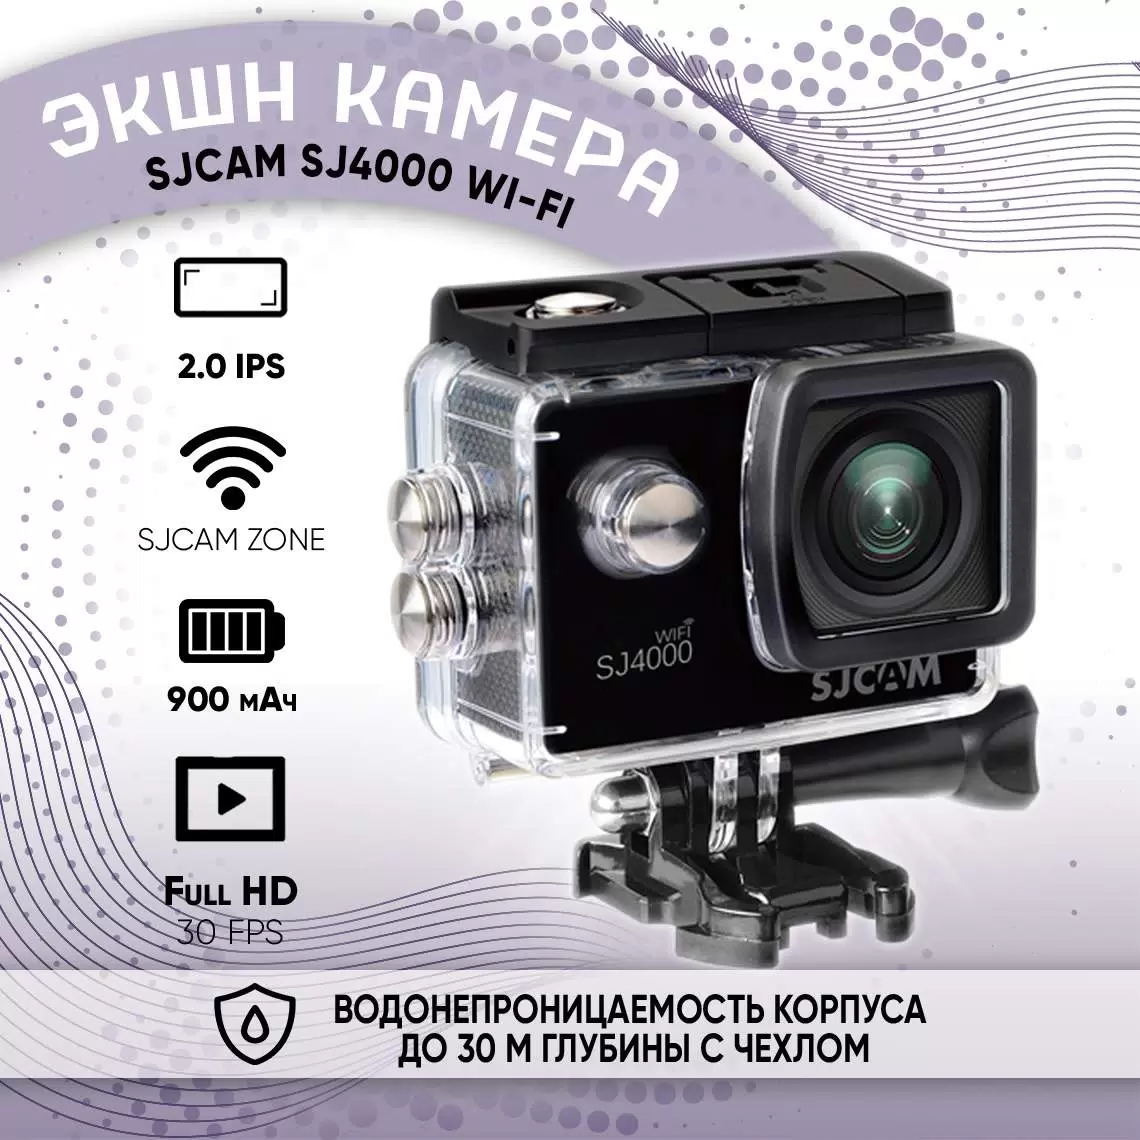 Экшн камера с креплением на шлем, голову, грудь 4k SJCAM SJ4000 WiFi, черный - VLARNIKA в Луганске